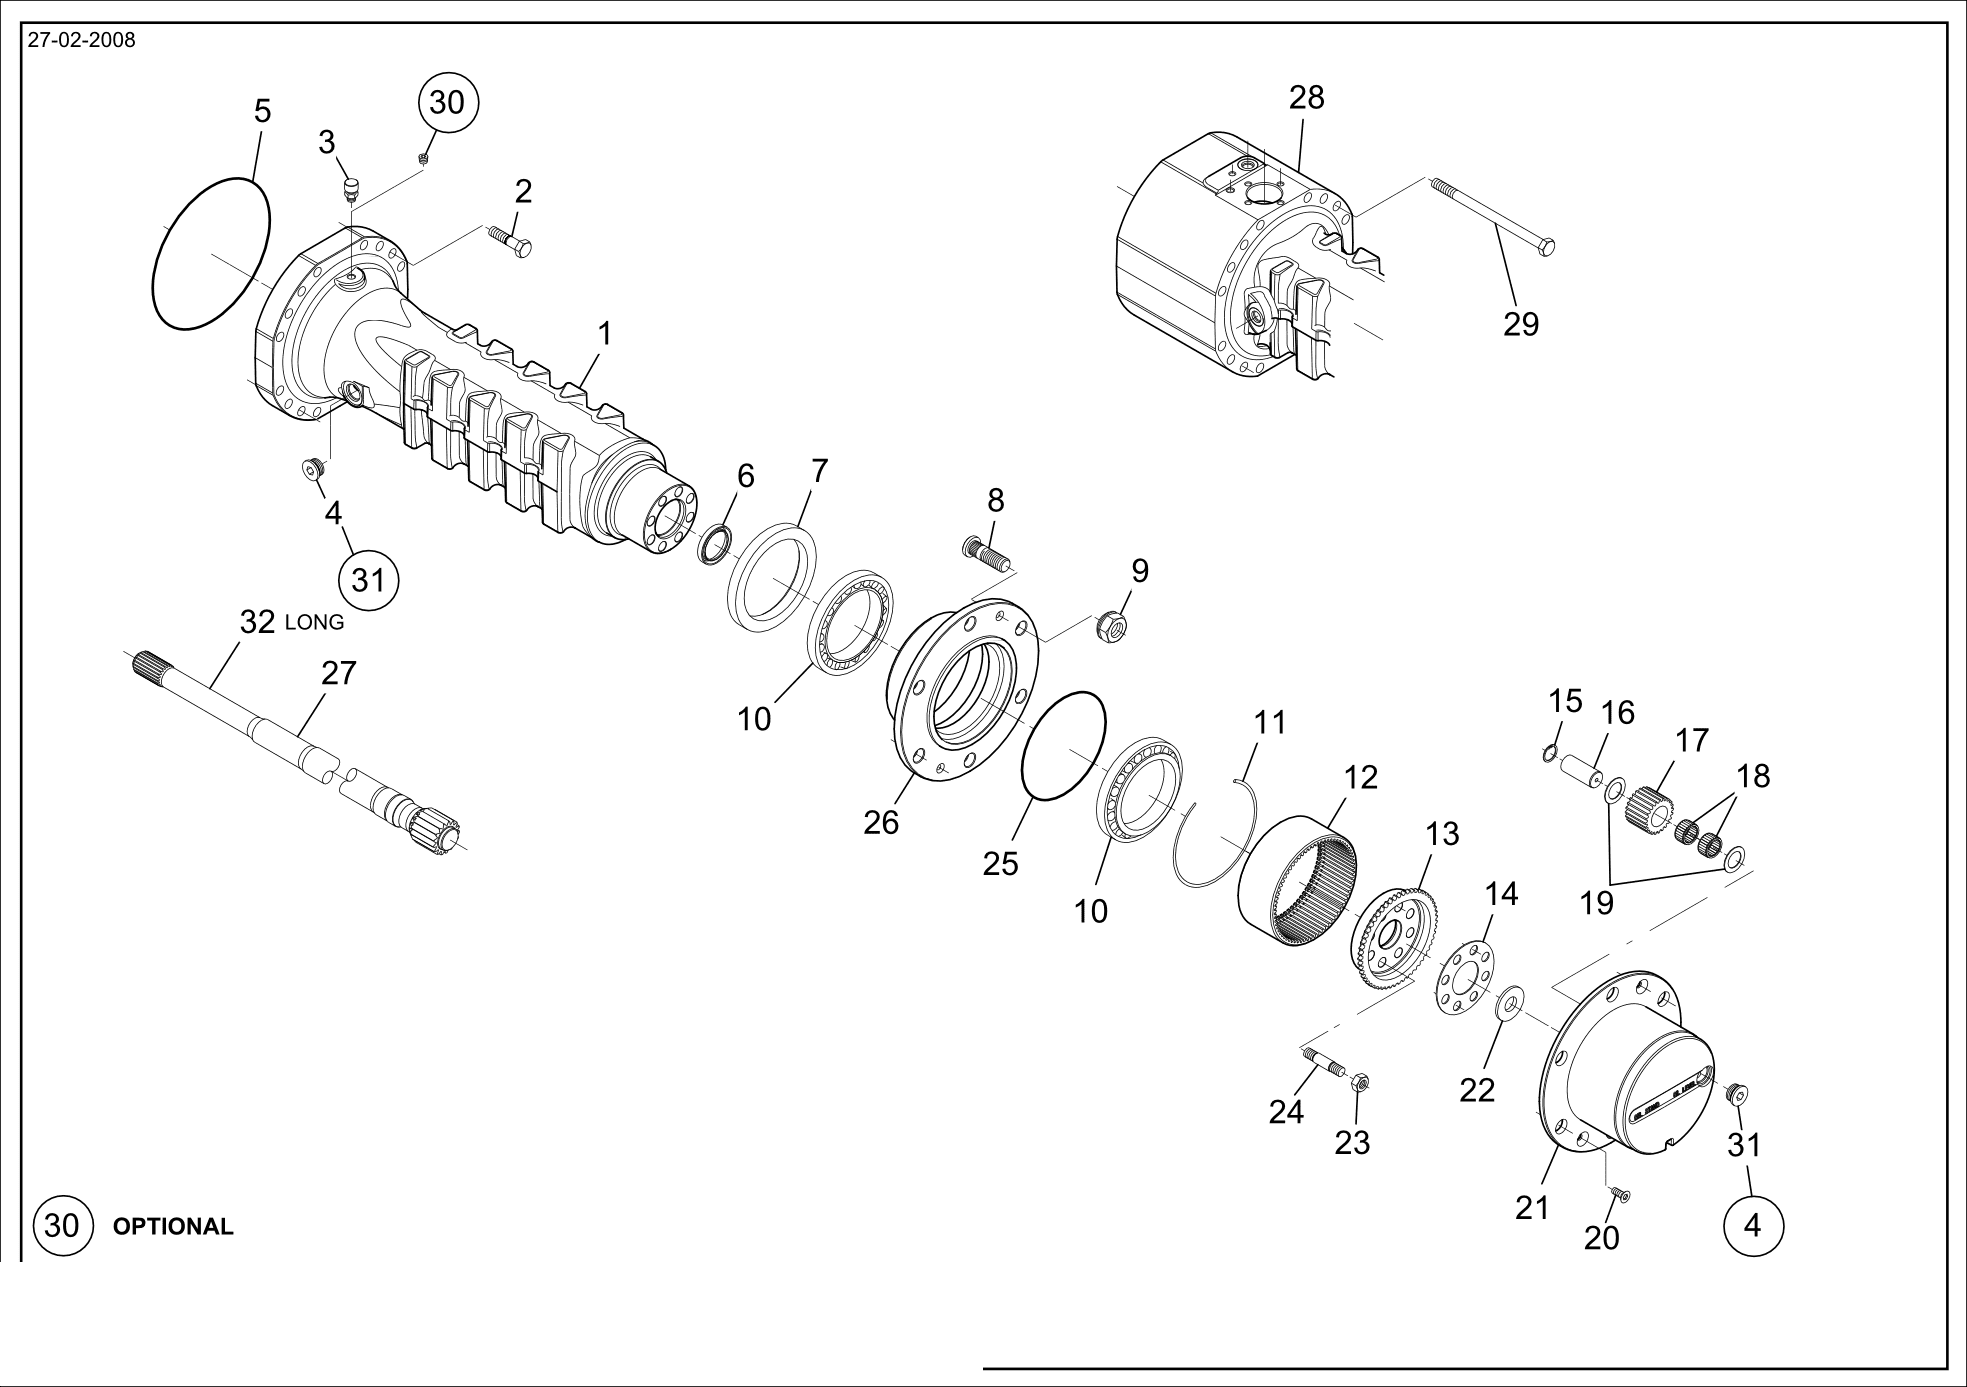 drawing for SCHOPF MASCHINENBAU GMBH 101170 - SHEET (figure 4)